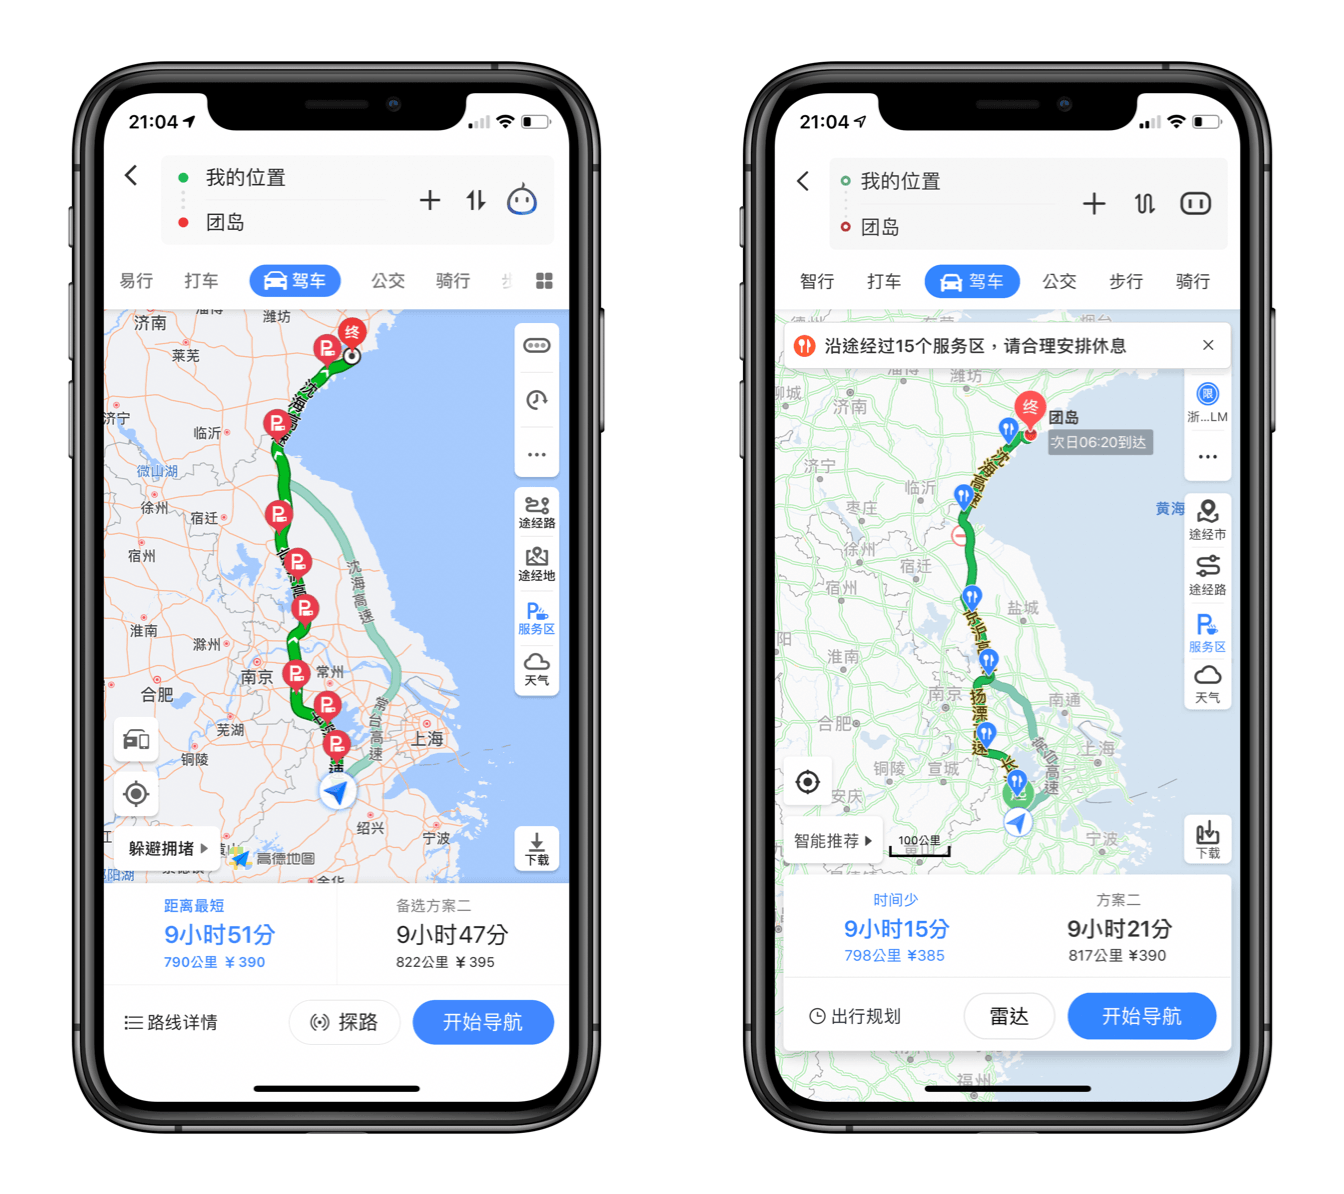 高德地图（左）和百度地图（右）将近 10 小时的自驾路线规划